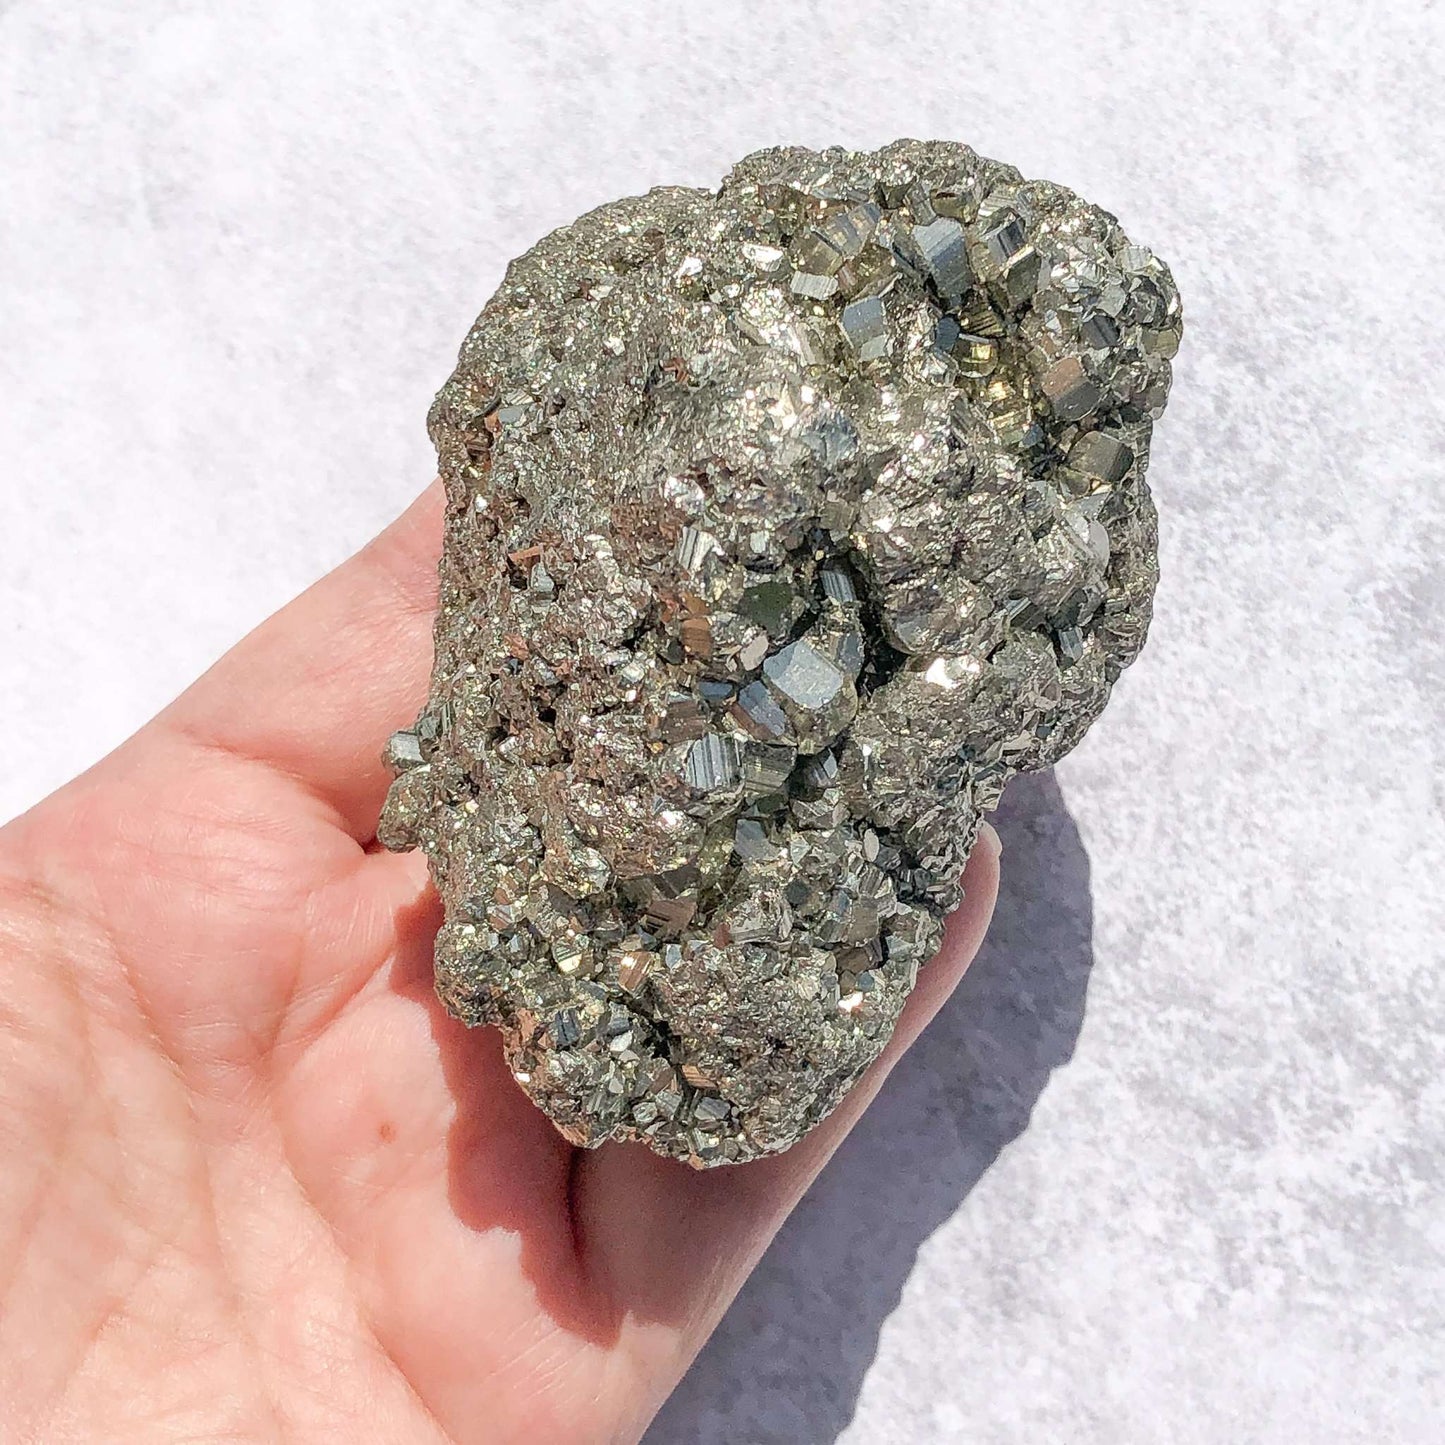 Golden pyrite specimen in hand